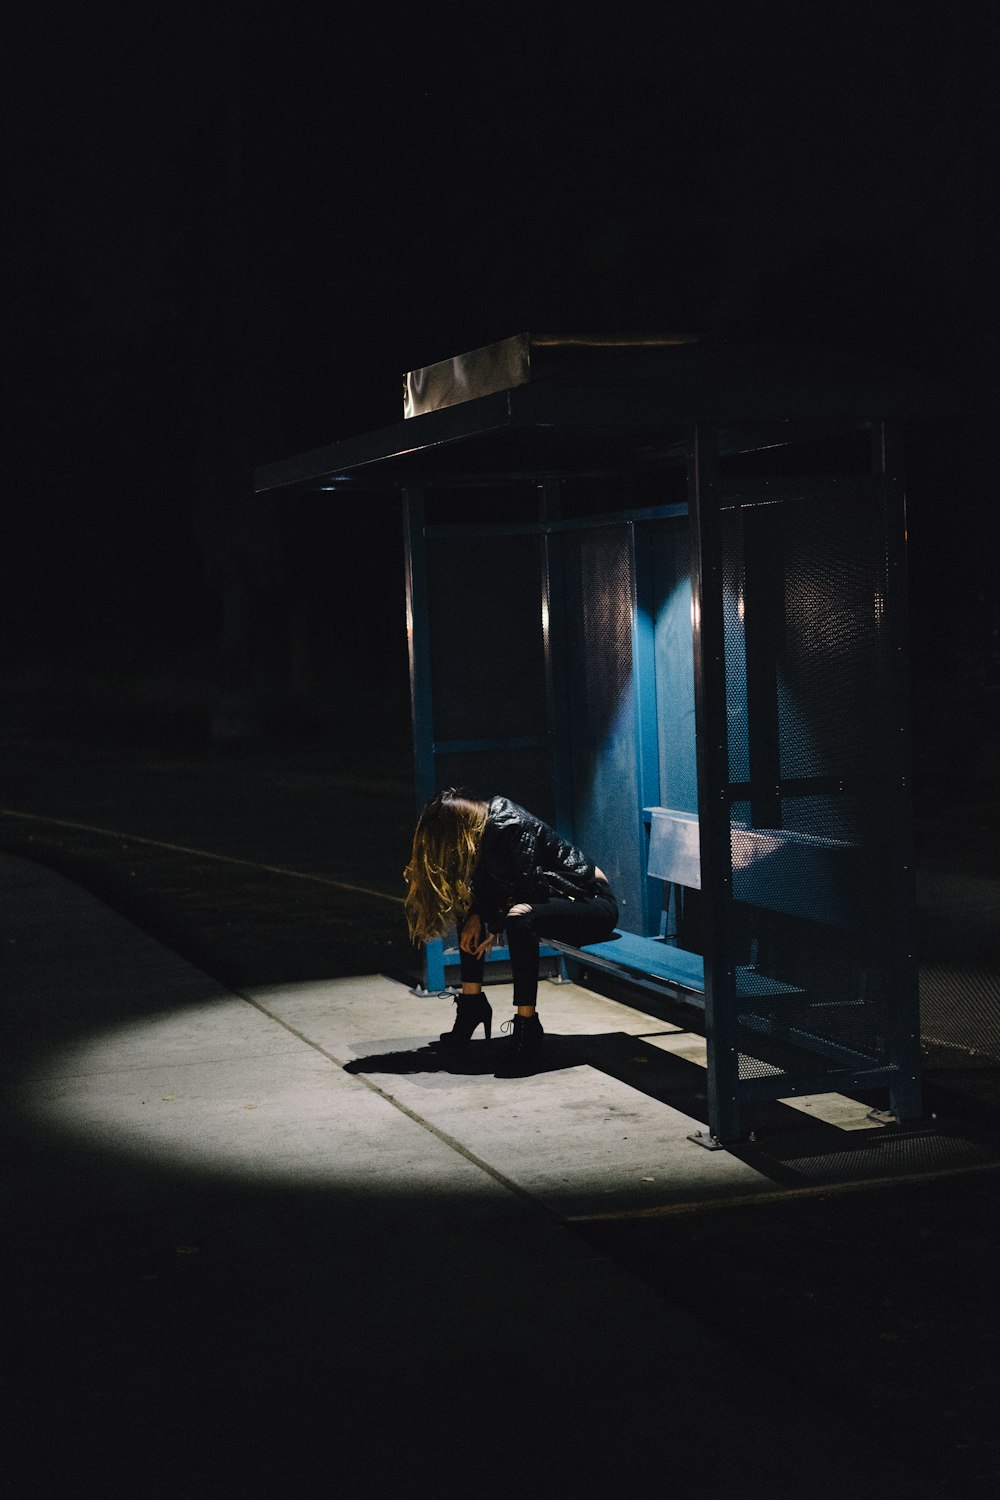 Frau sitzt nachts auf schwarzer Hantelbank